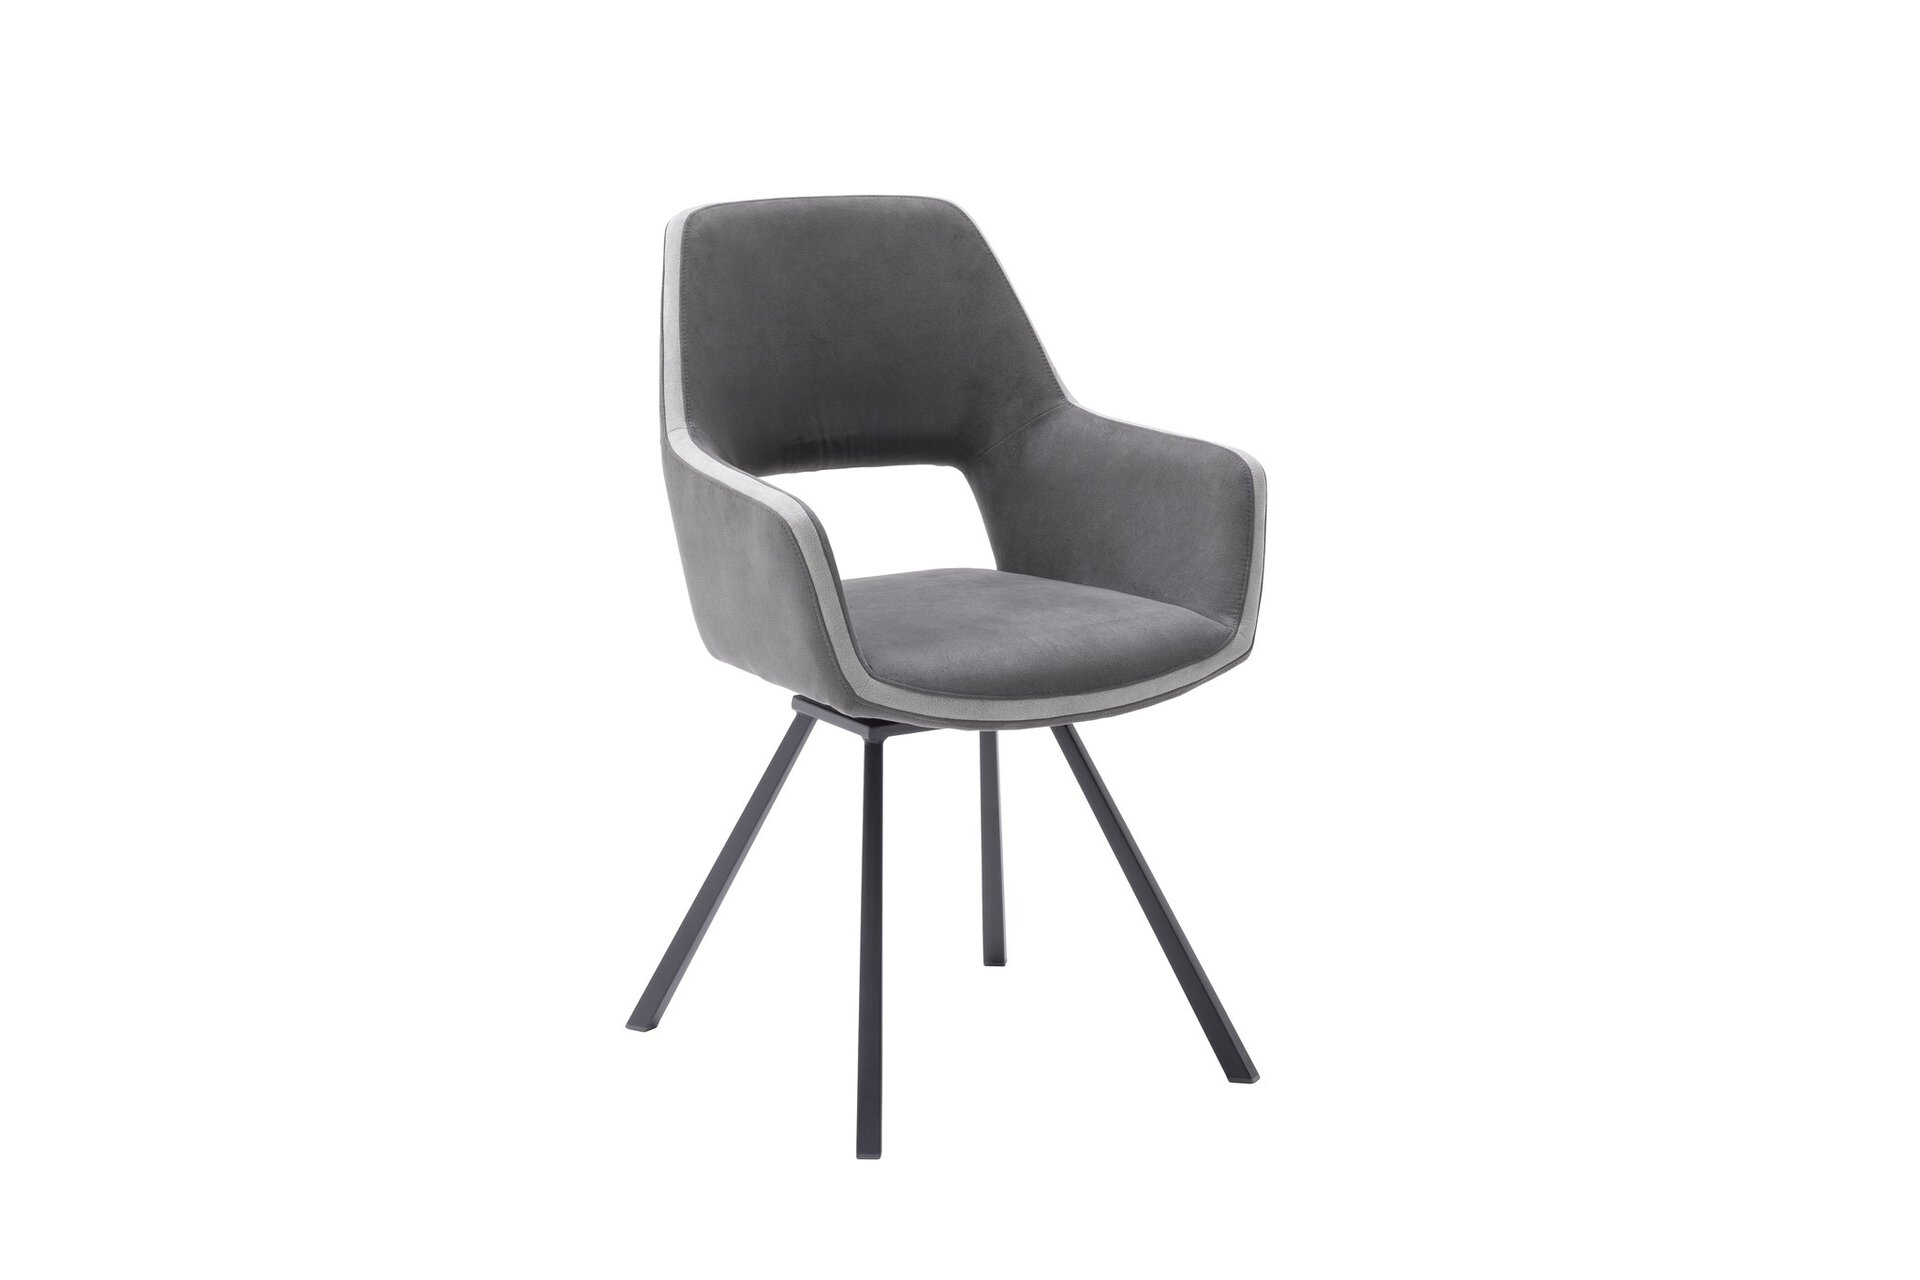 Armlehnstuhl Inhofer | MCA Textil Möbel furniture